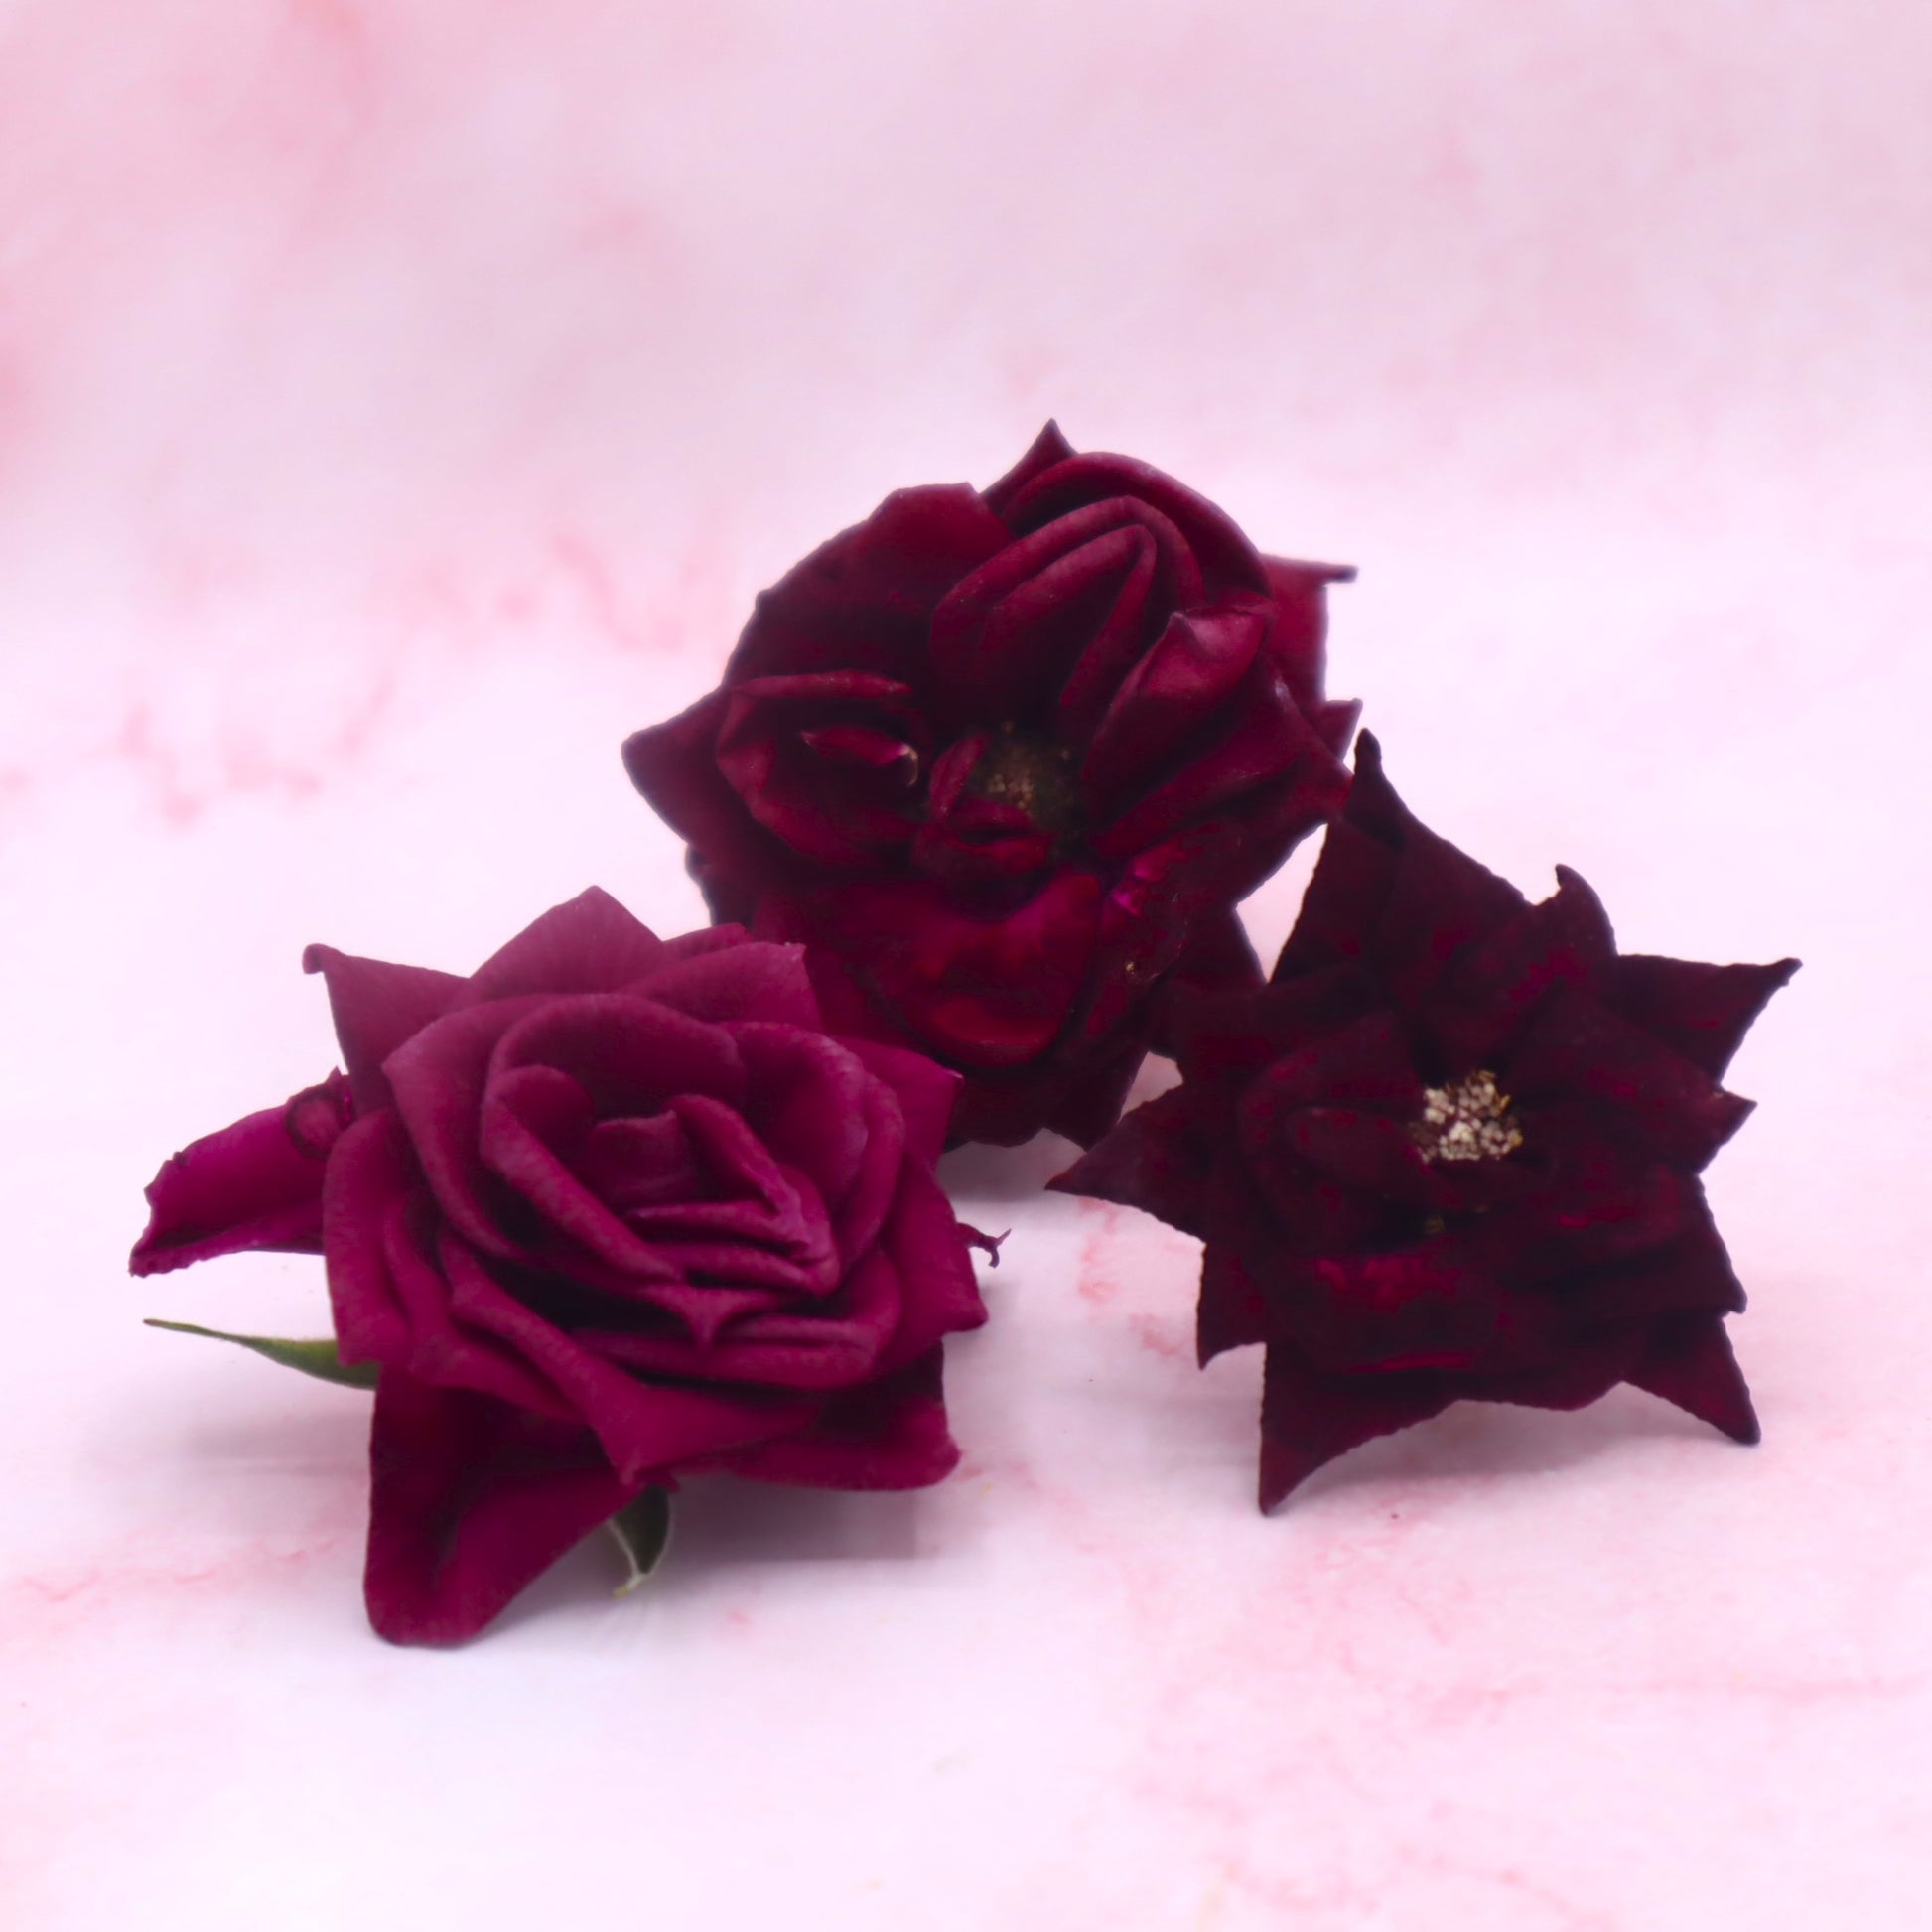 gevriesdroogde rozen. rode roos. eetbare bloemen. Freeze dried edible roses